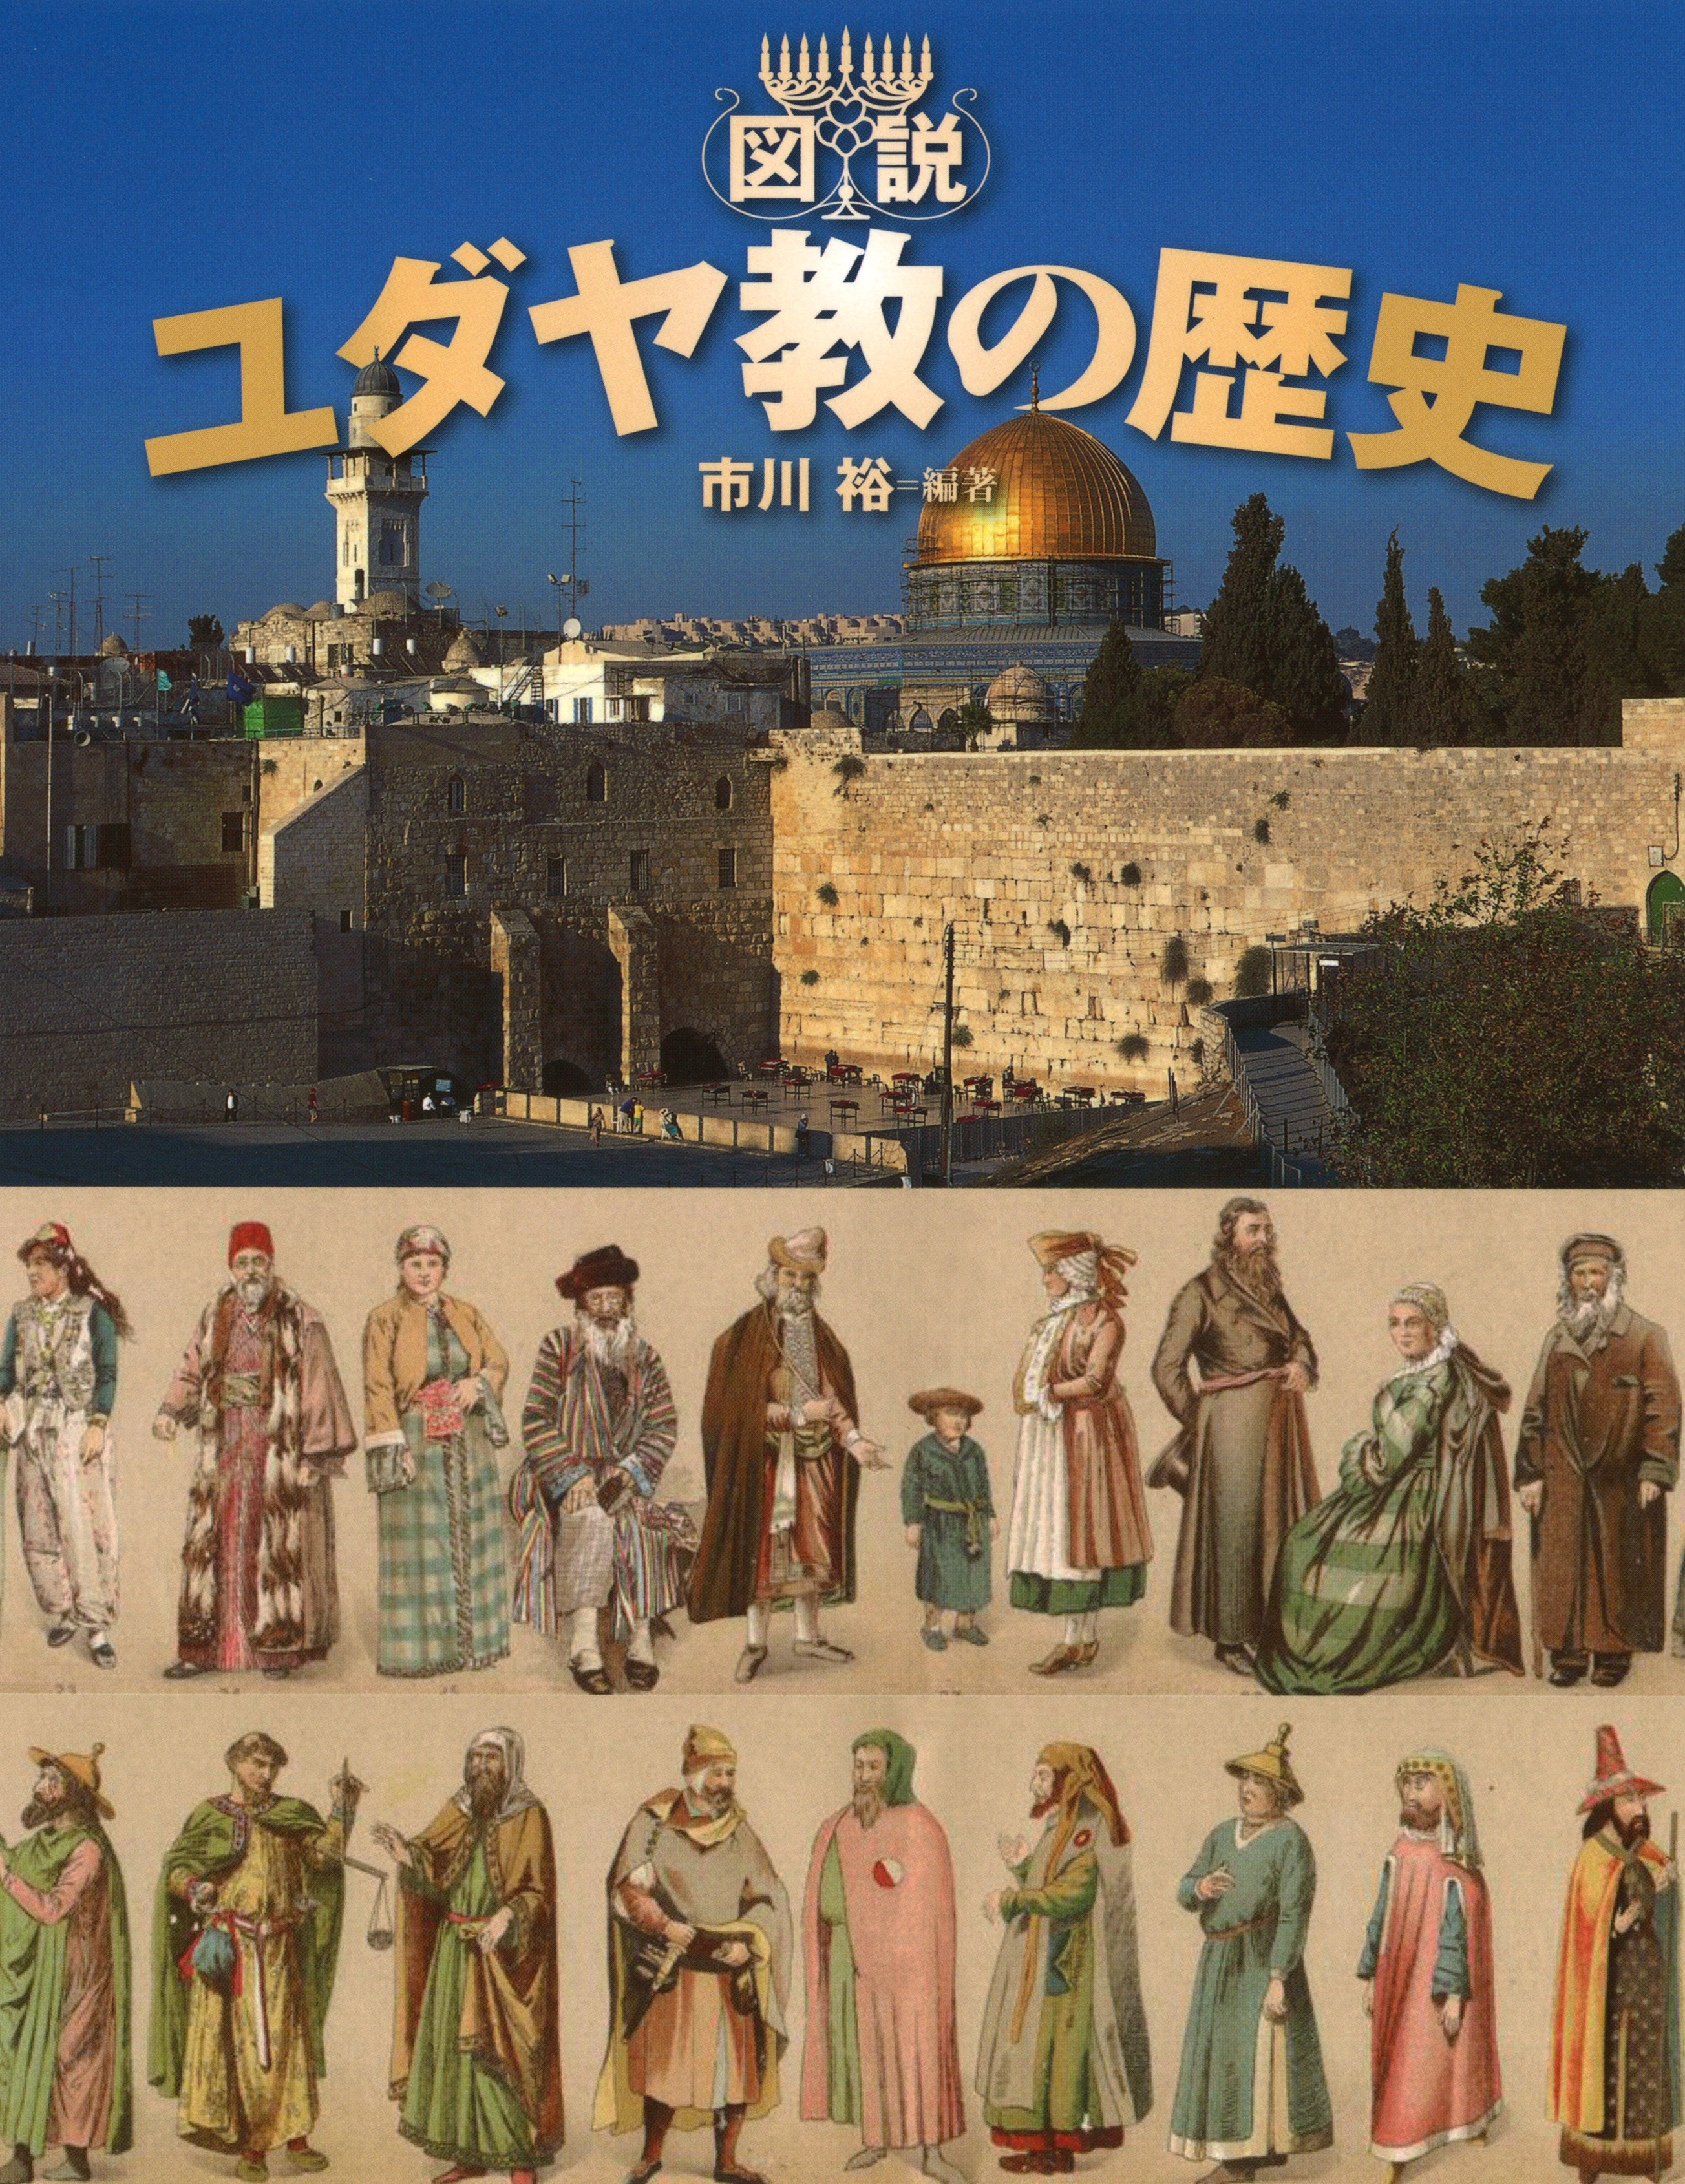 エルサレムの写真とユダヤ教徒たちのイラスト